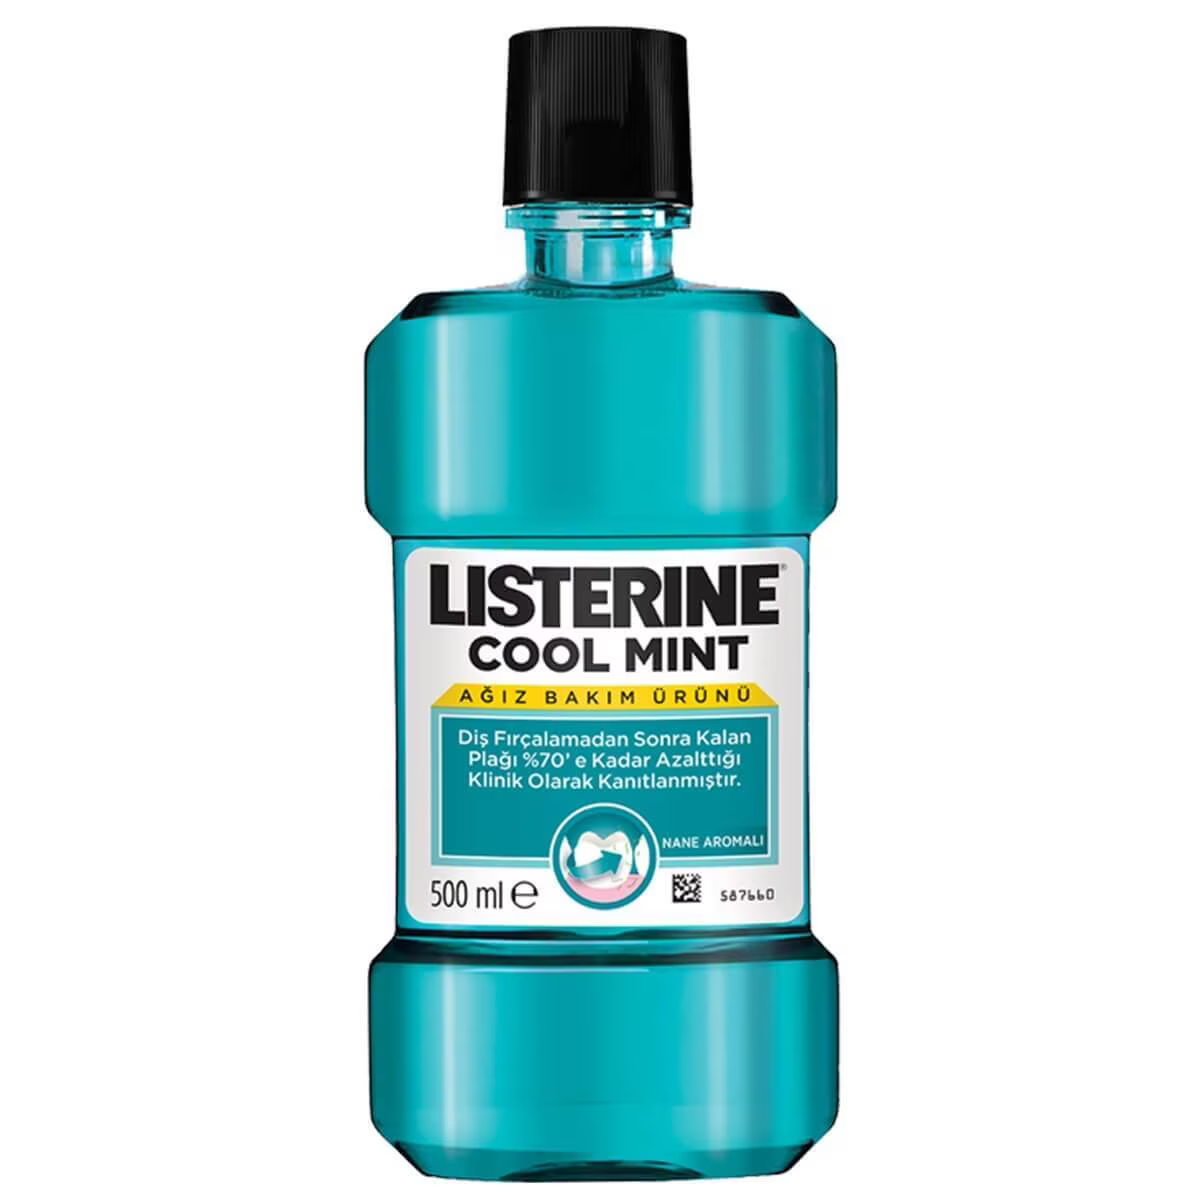 Listerine cool mint ağız bakım suyu 500 ml kapak resmi